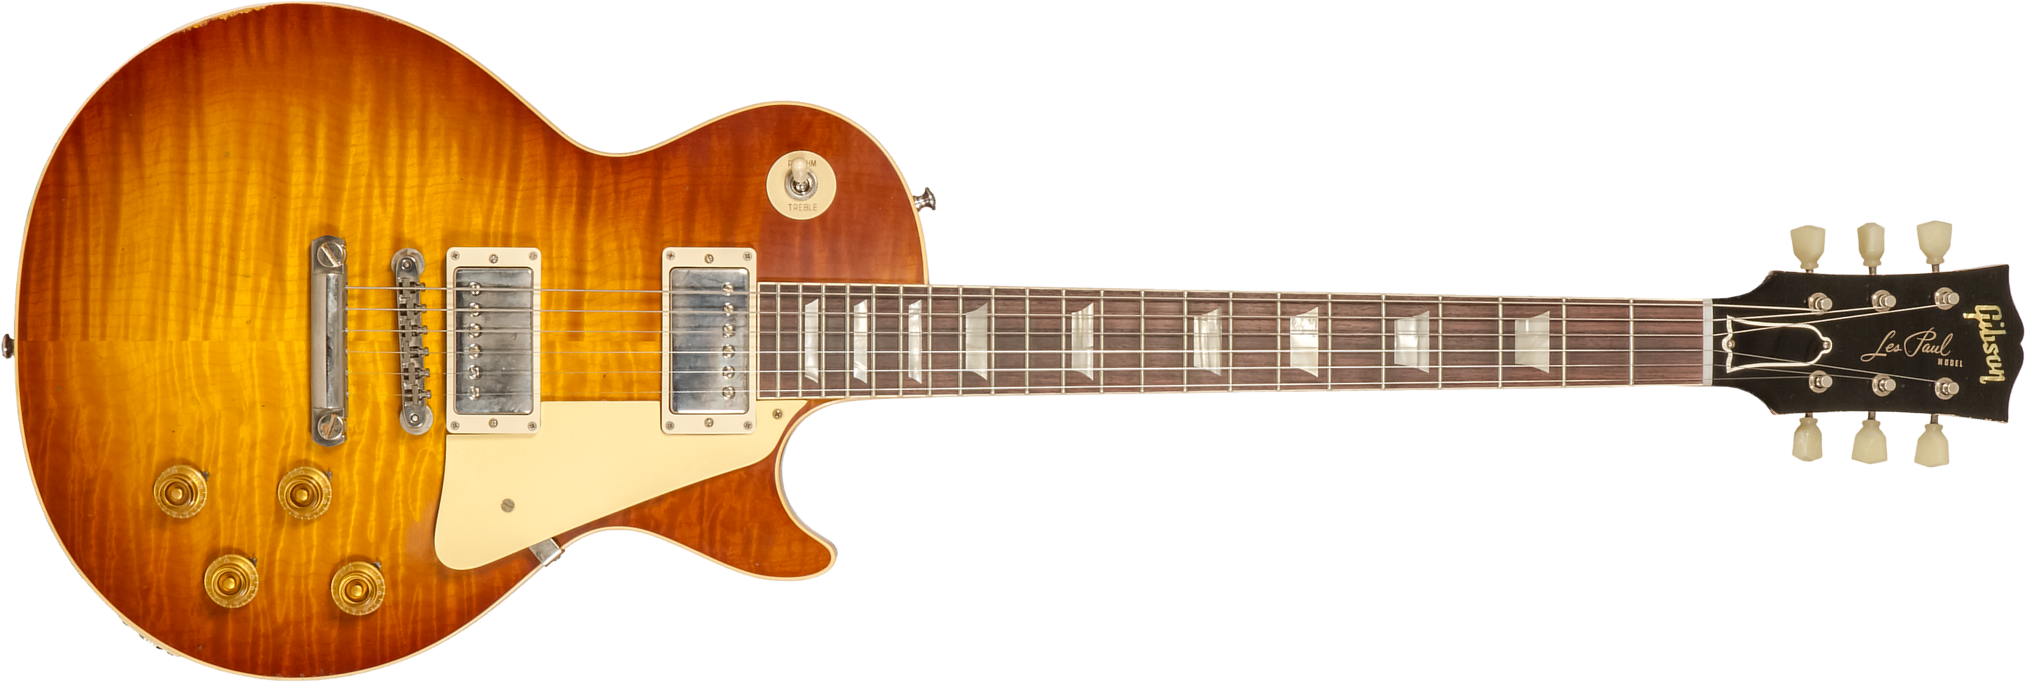 Gibson Custom Shop M2m Les Paul Standard 1959 Reissue 2h Ht Rw #94327 - Murphy Lab Light Aged Ice Tea Burst - Guitare Électrique Single Cut - Main pic